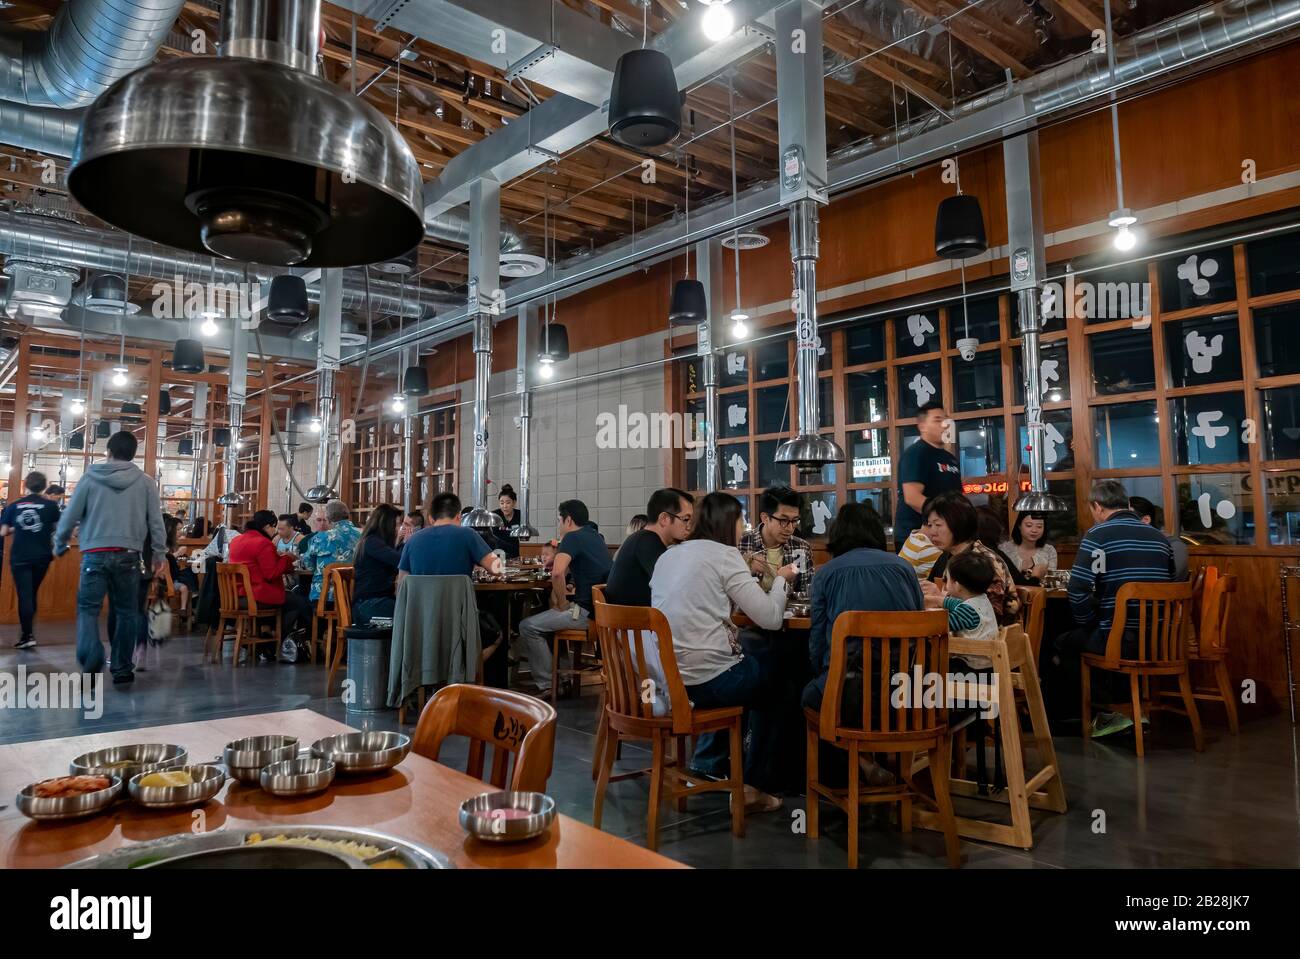 Los Angeles, 13 JUILLET : vue intérieure d'un restaurant barbecue de style coréen le 13 JUILLET 2016 à Los Angeles, Californie Banque D'Images